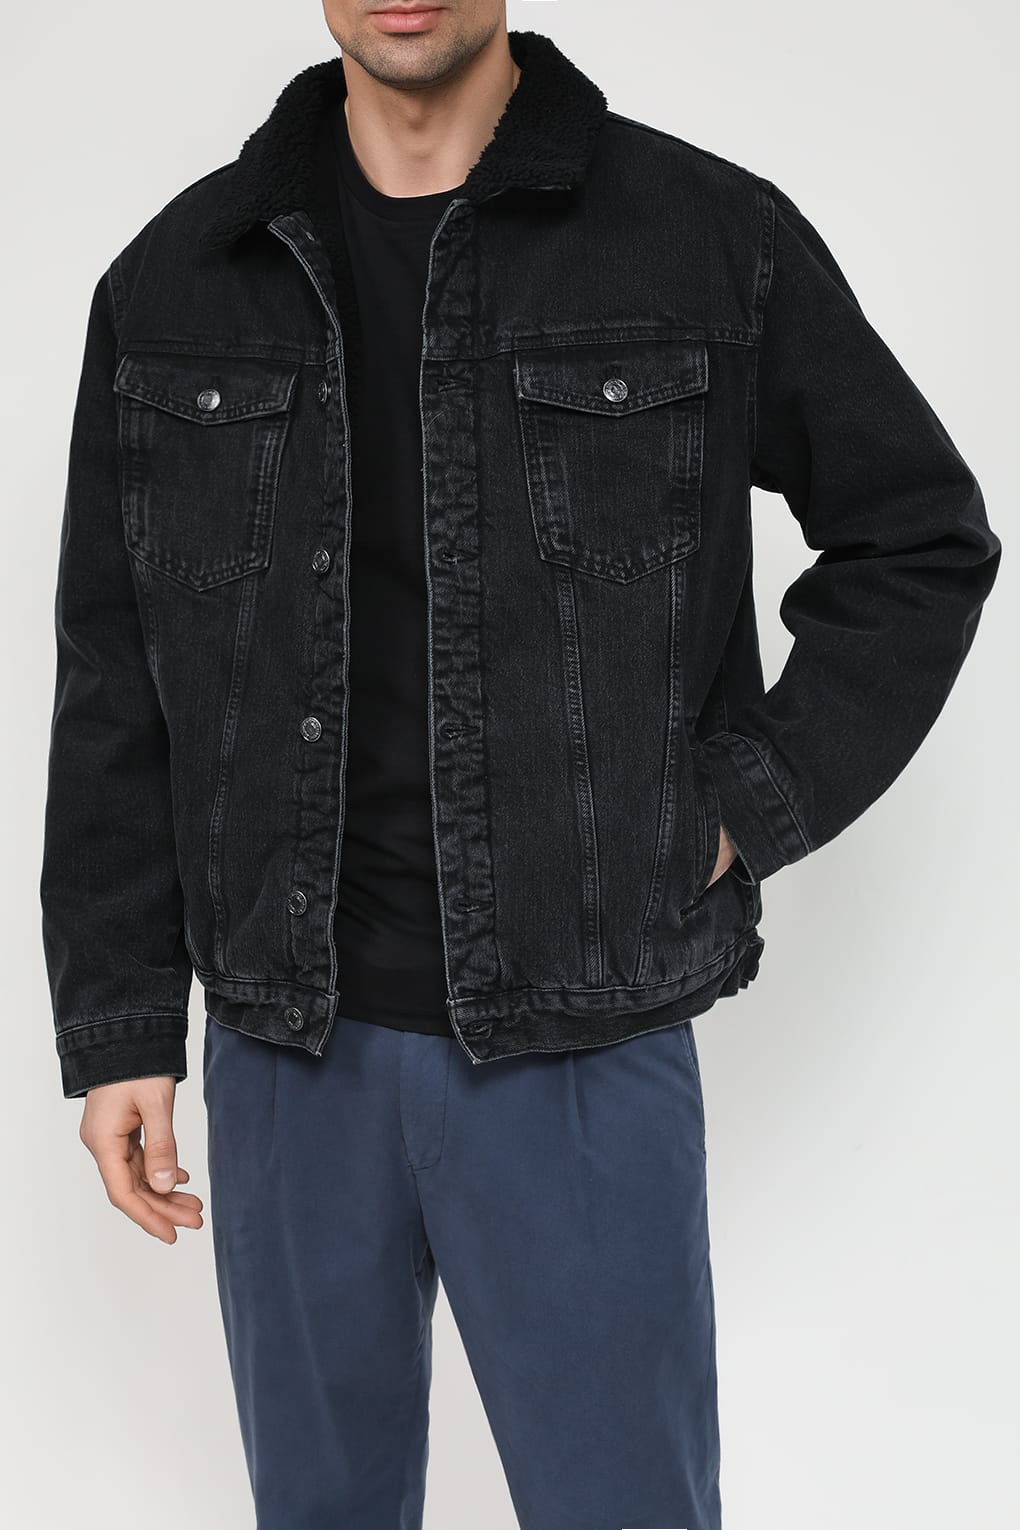 Джинсовая куртка мужская COLORPLAY CP23079309 черная 54 RU